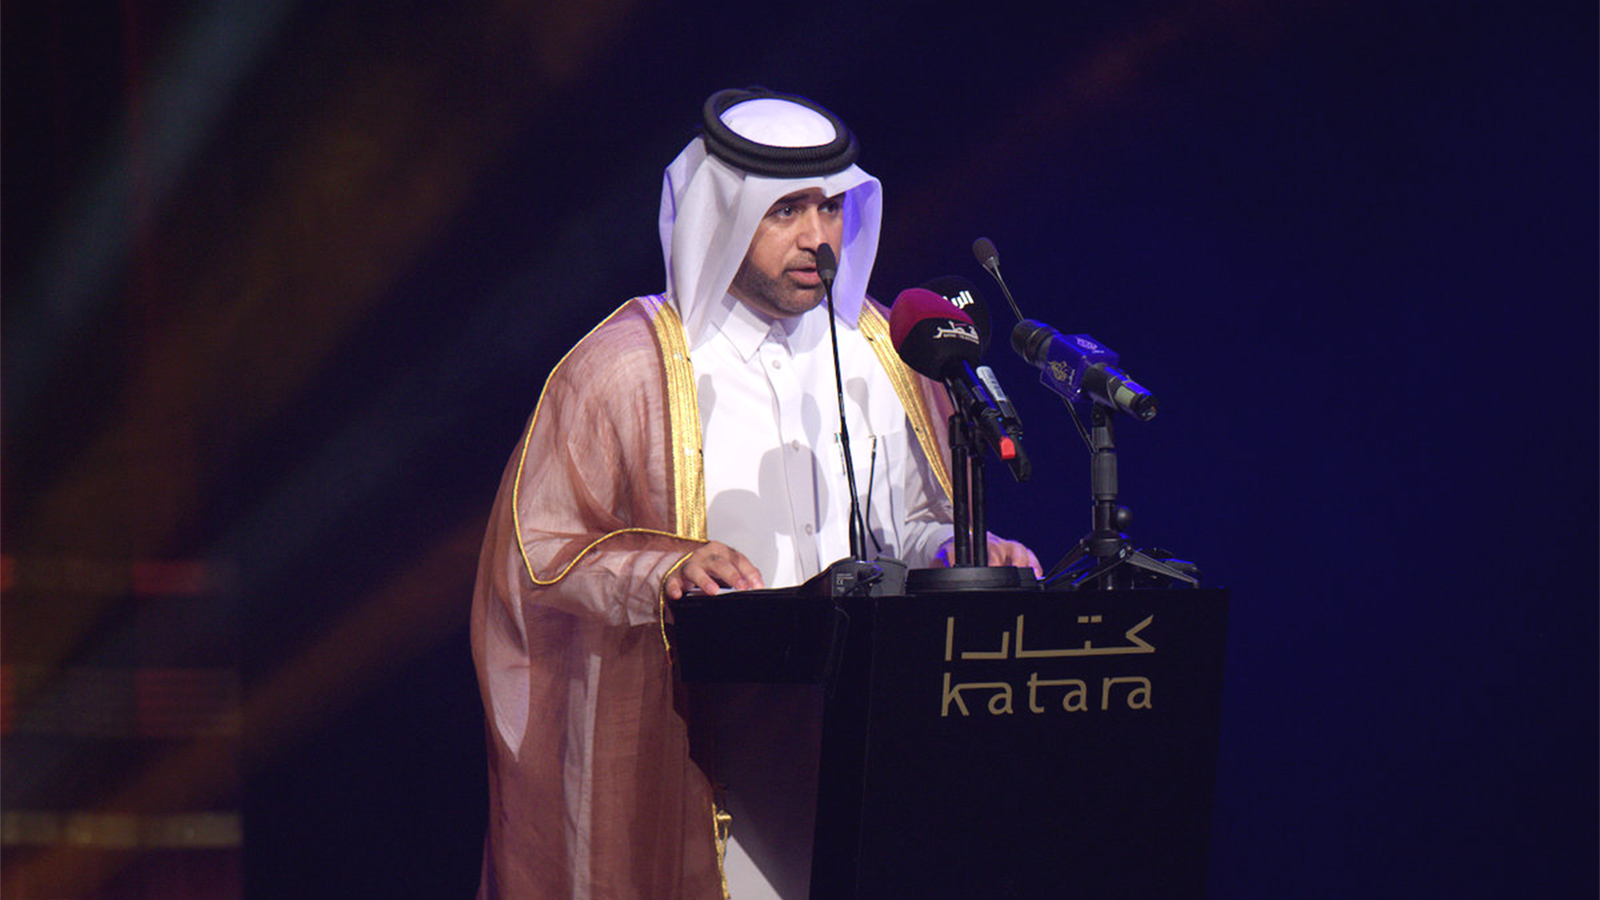 خالد السليطي: الجائزة تسعى للارتقاء بالرواية وترسيخ ريادتها عربيا وإشعاعها وانتشارها عالميا عبر جسور الترجمة إلى لغات أجنبية حية(الجزيرة)